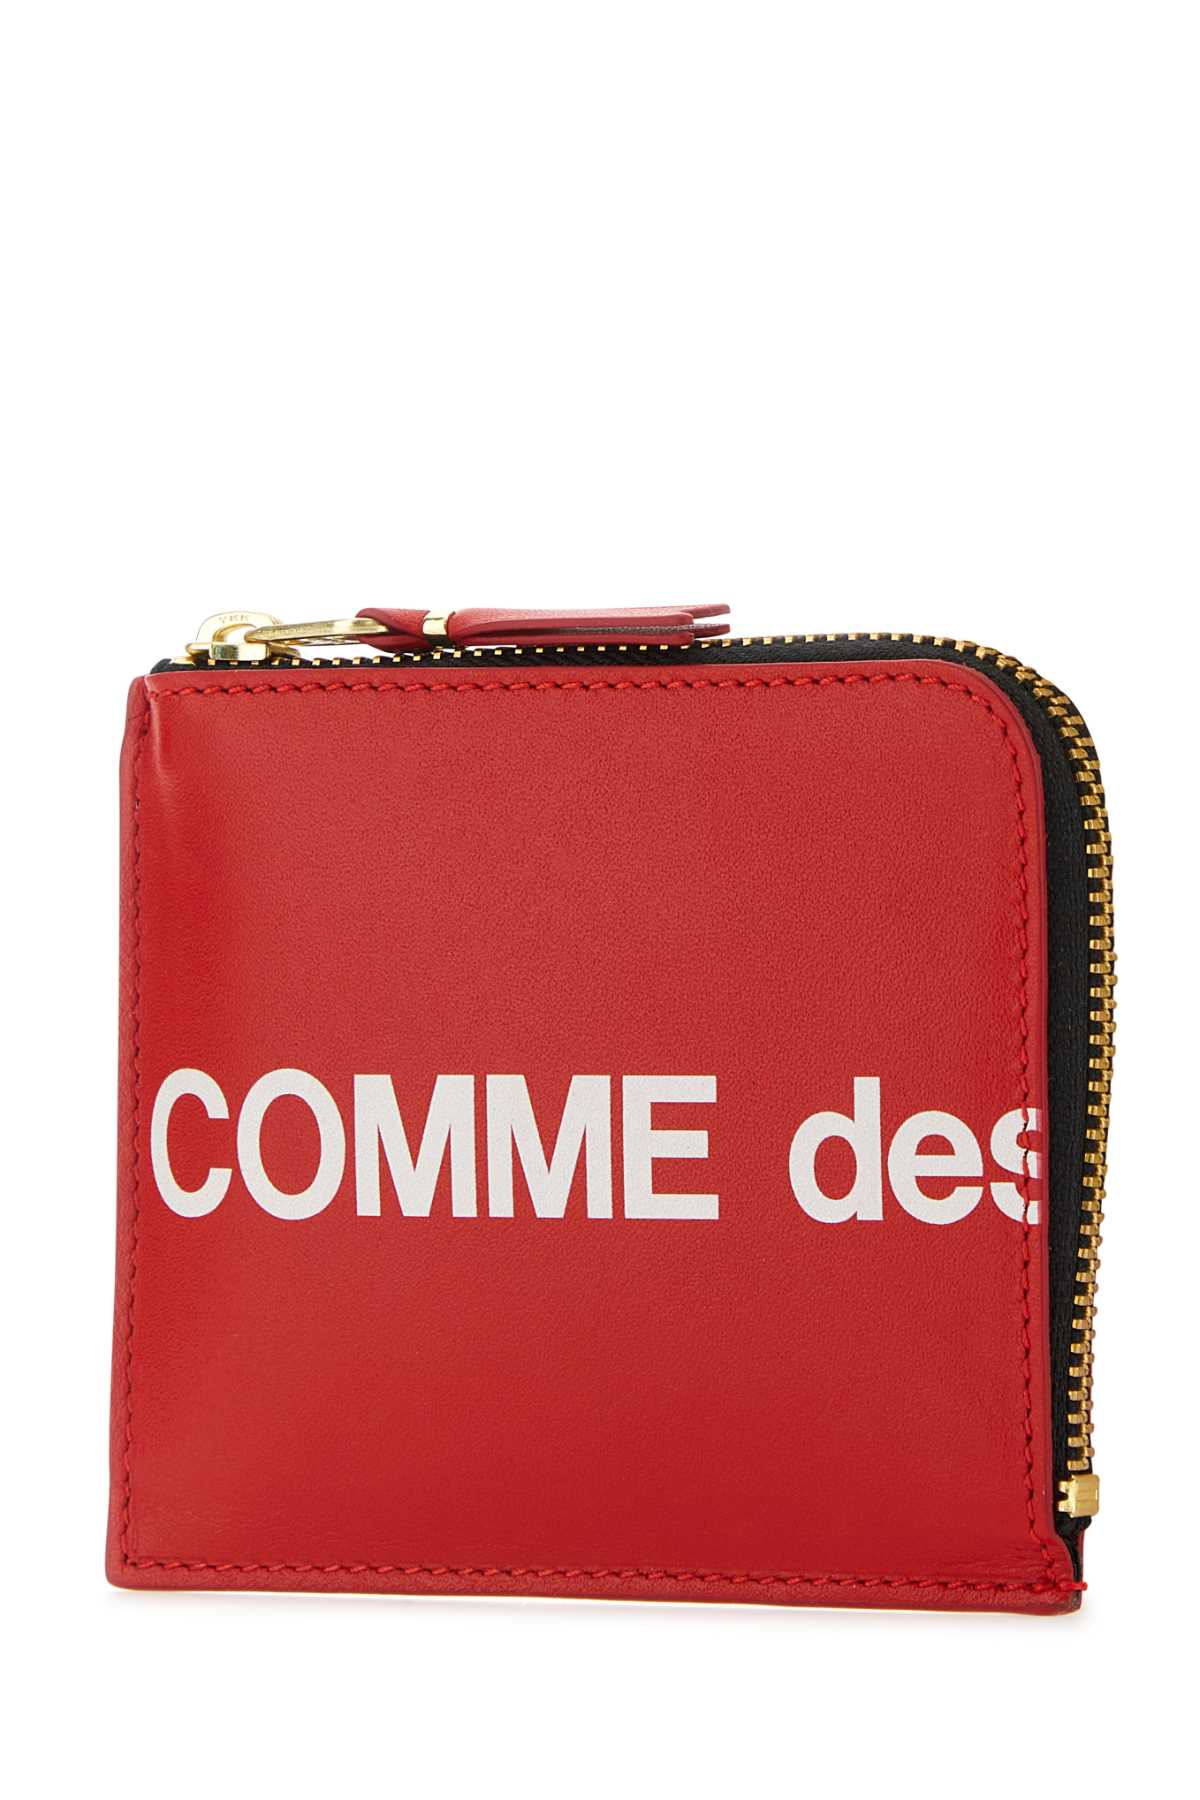 Shop Comme Des Garçons Red Leather Coin Case